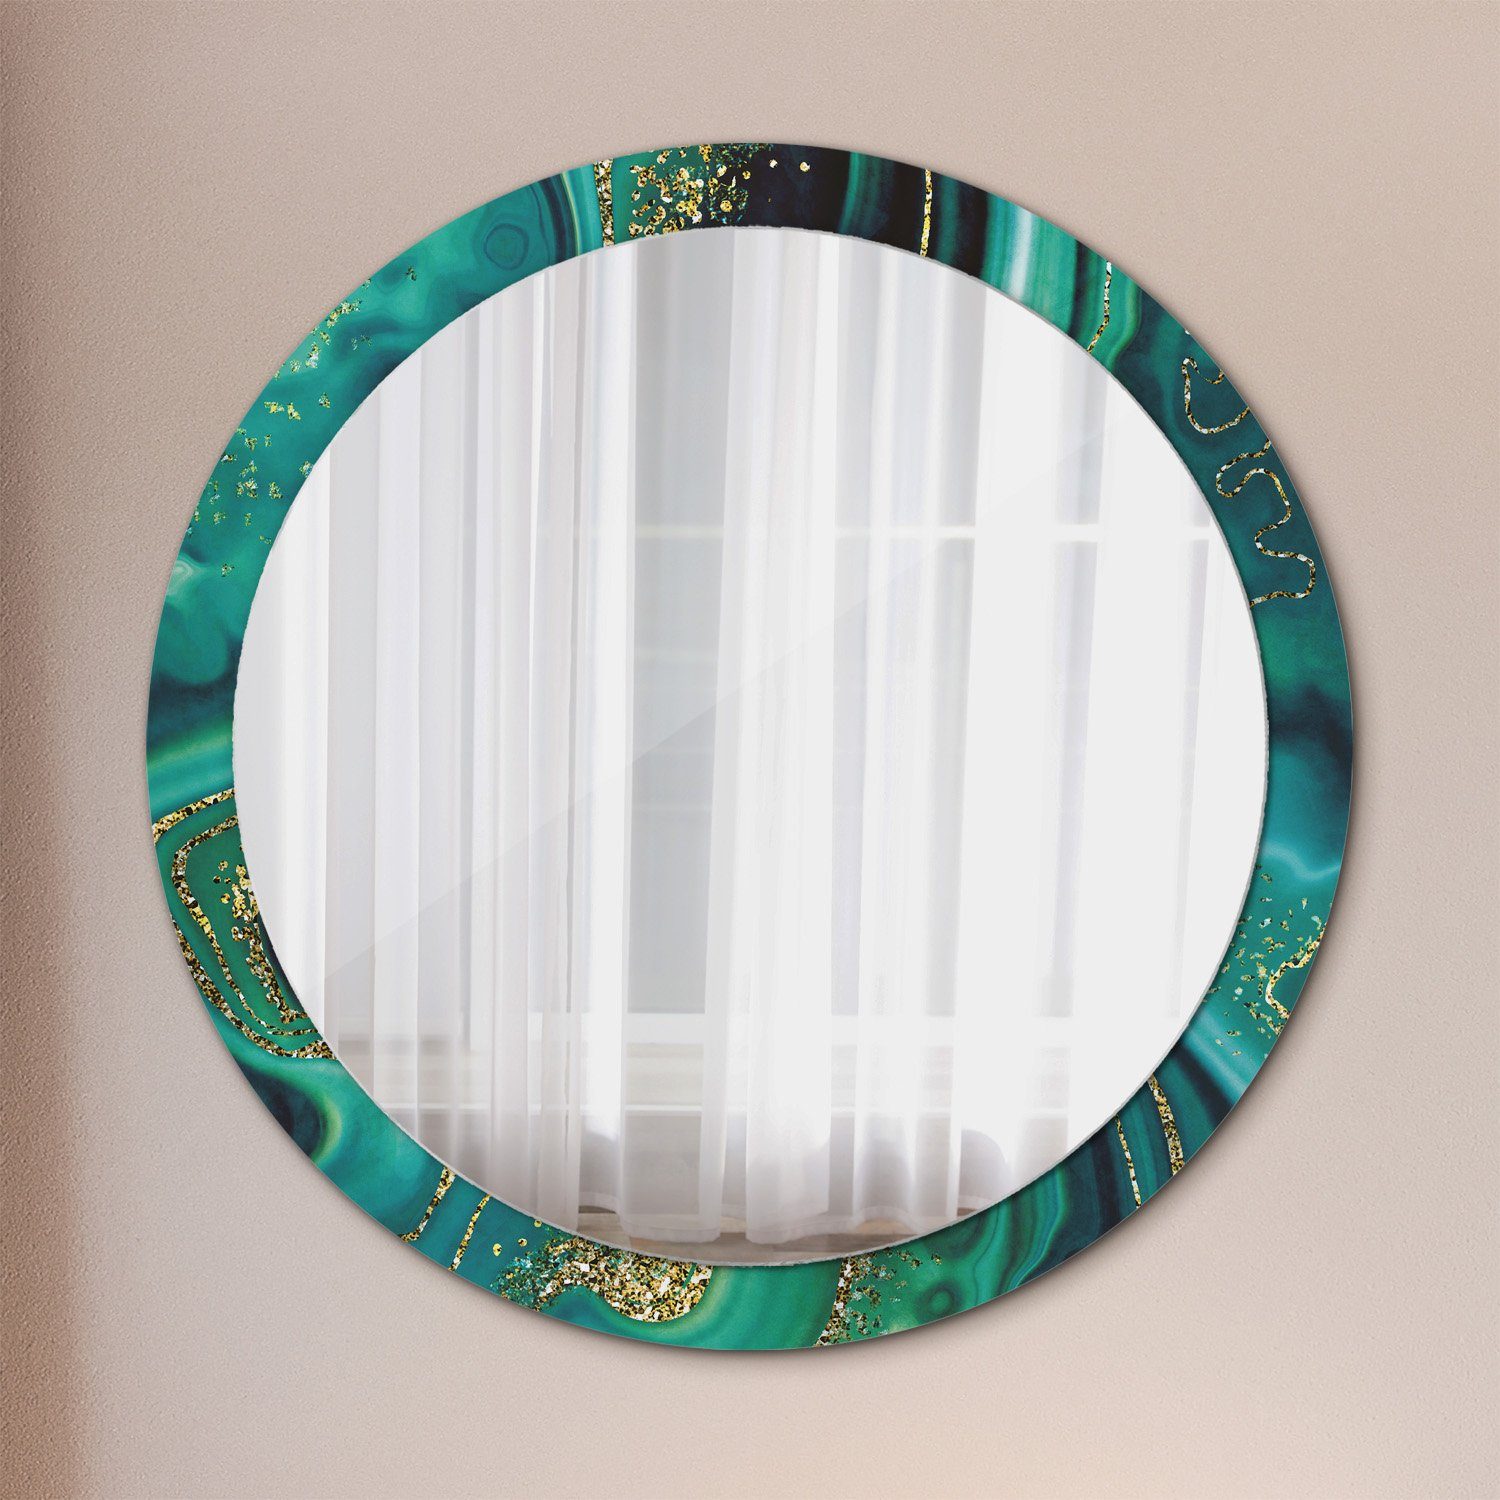 Tulup Wandspiegel Runder Deko Spiegel mit Modernem Aufdruck Rundspiegel Rund: Ø100cm, Runder Spiegel mit Modernem Aufdruck Smaragd Grün